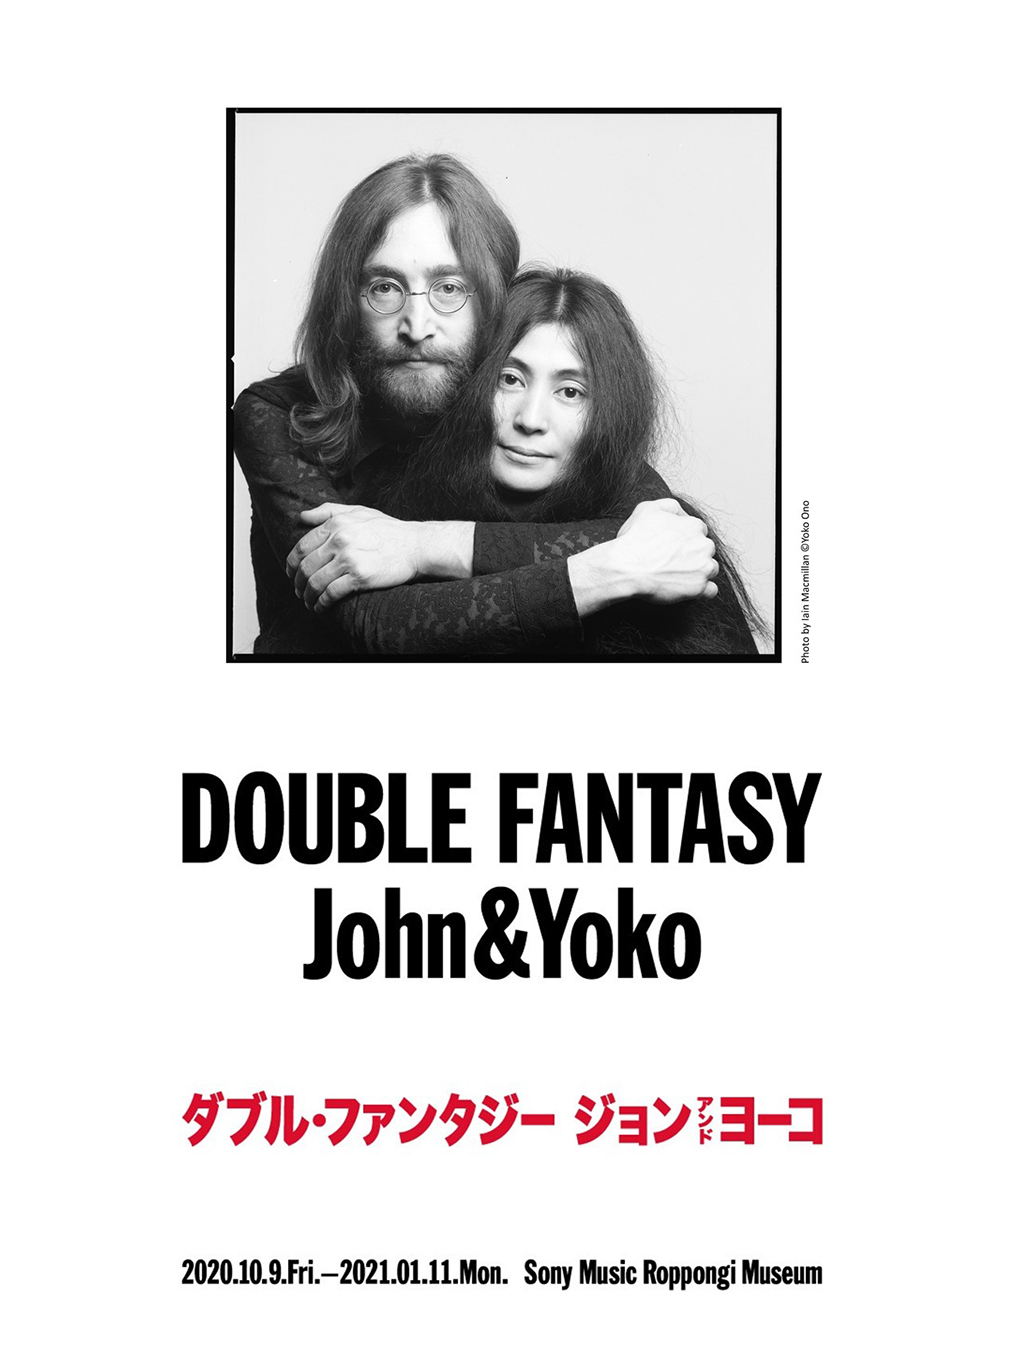 ジョン レノンとオノ ヨーコが残したメッセージとは Double Fantasy John Yoko の開催秘話 J Wave 81 3 Fm Jk Radio Tokyo United